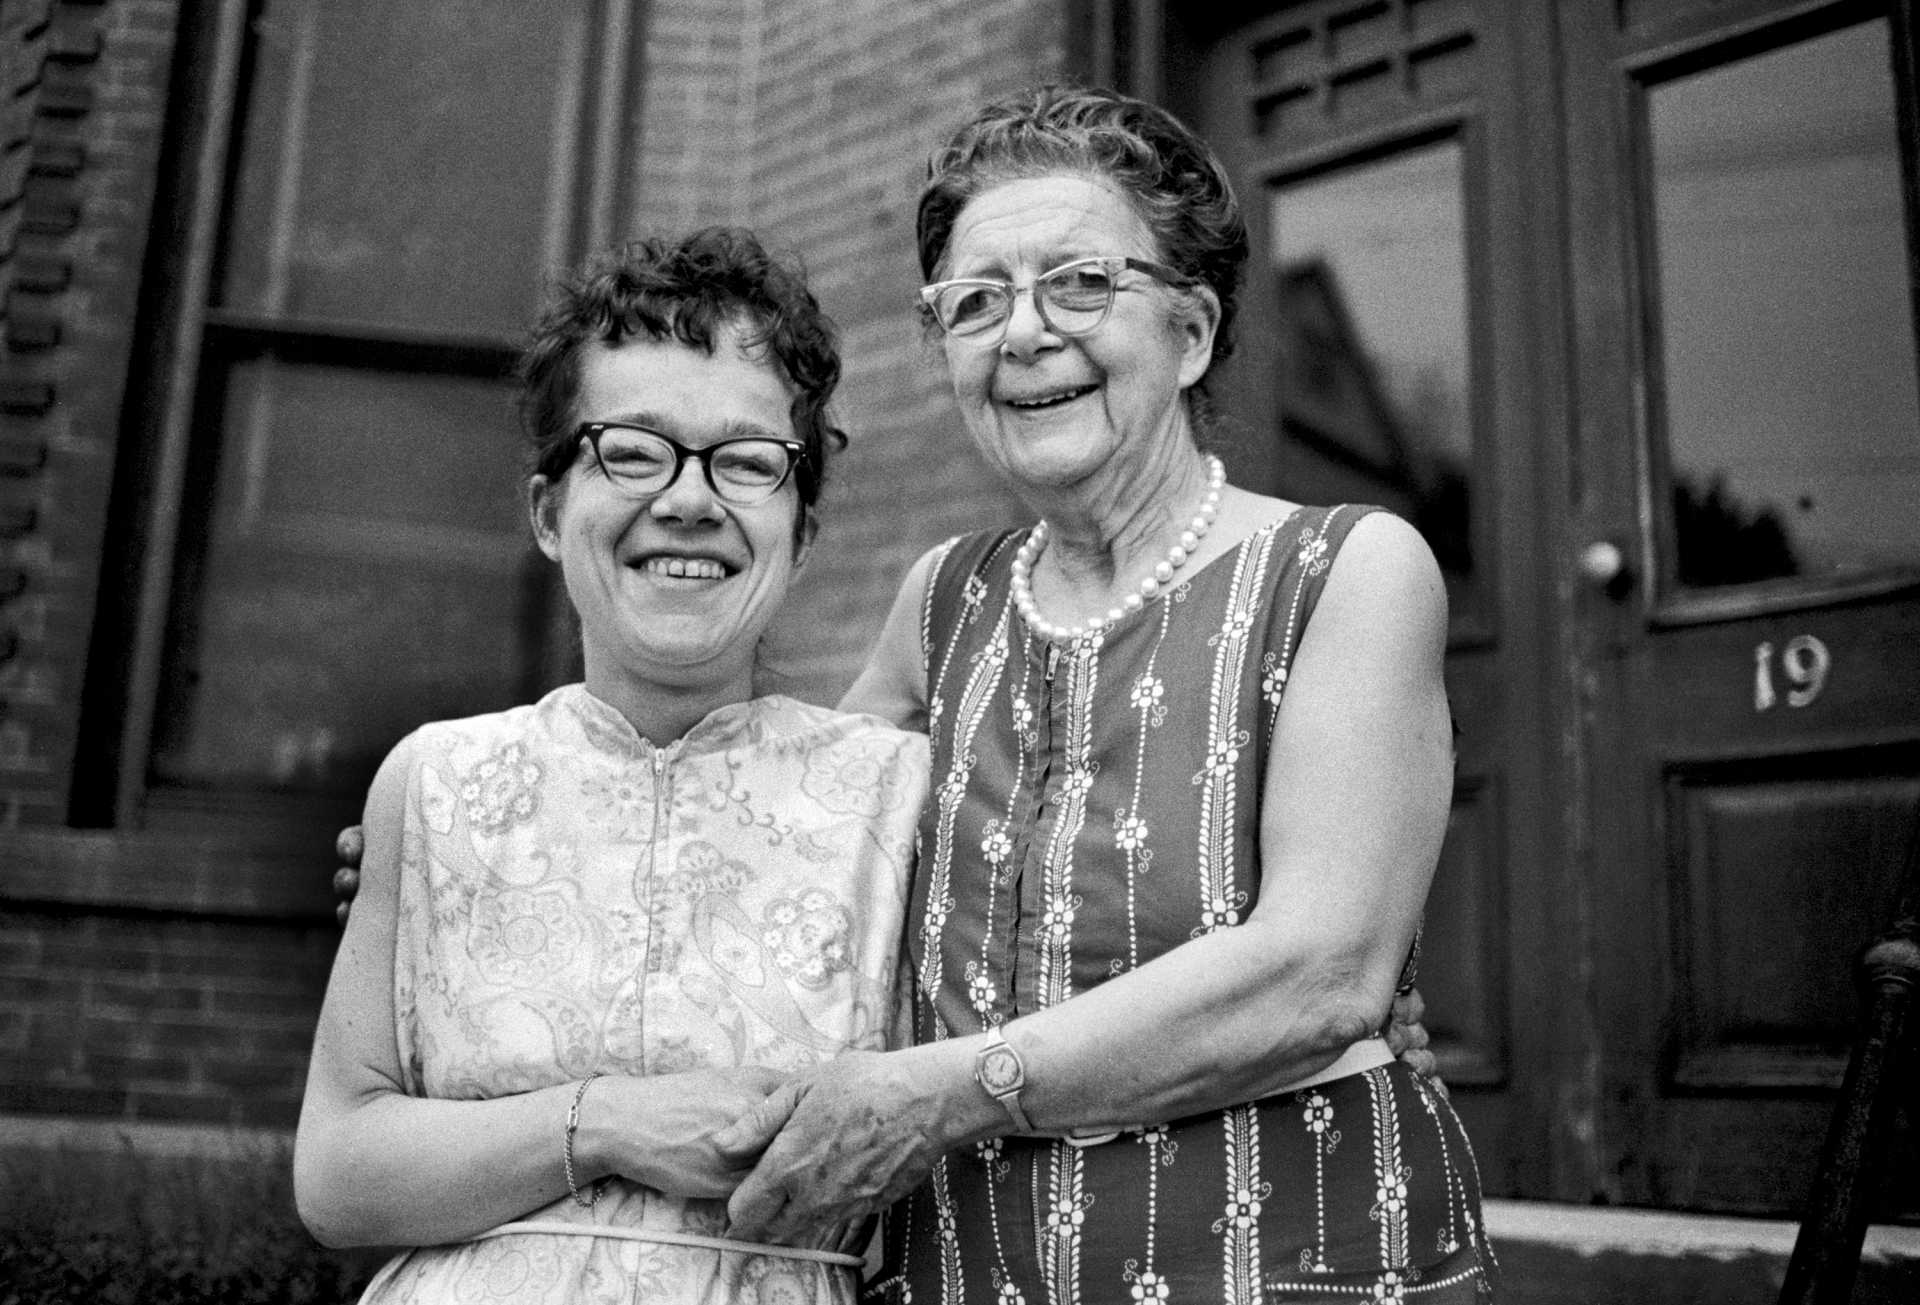 Gertrude Van Lanagan and her mother Myrtle, my neighbors in Danbury. 1979